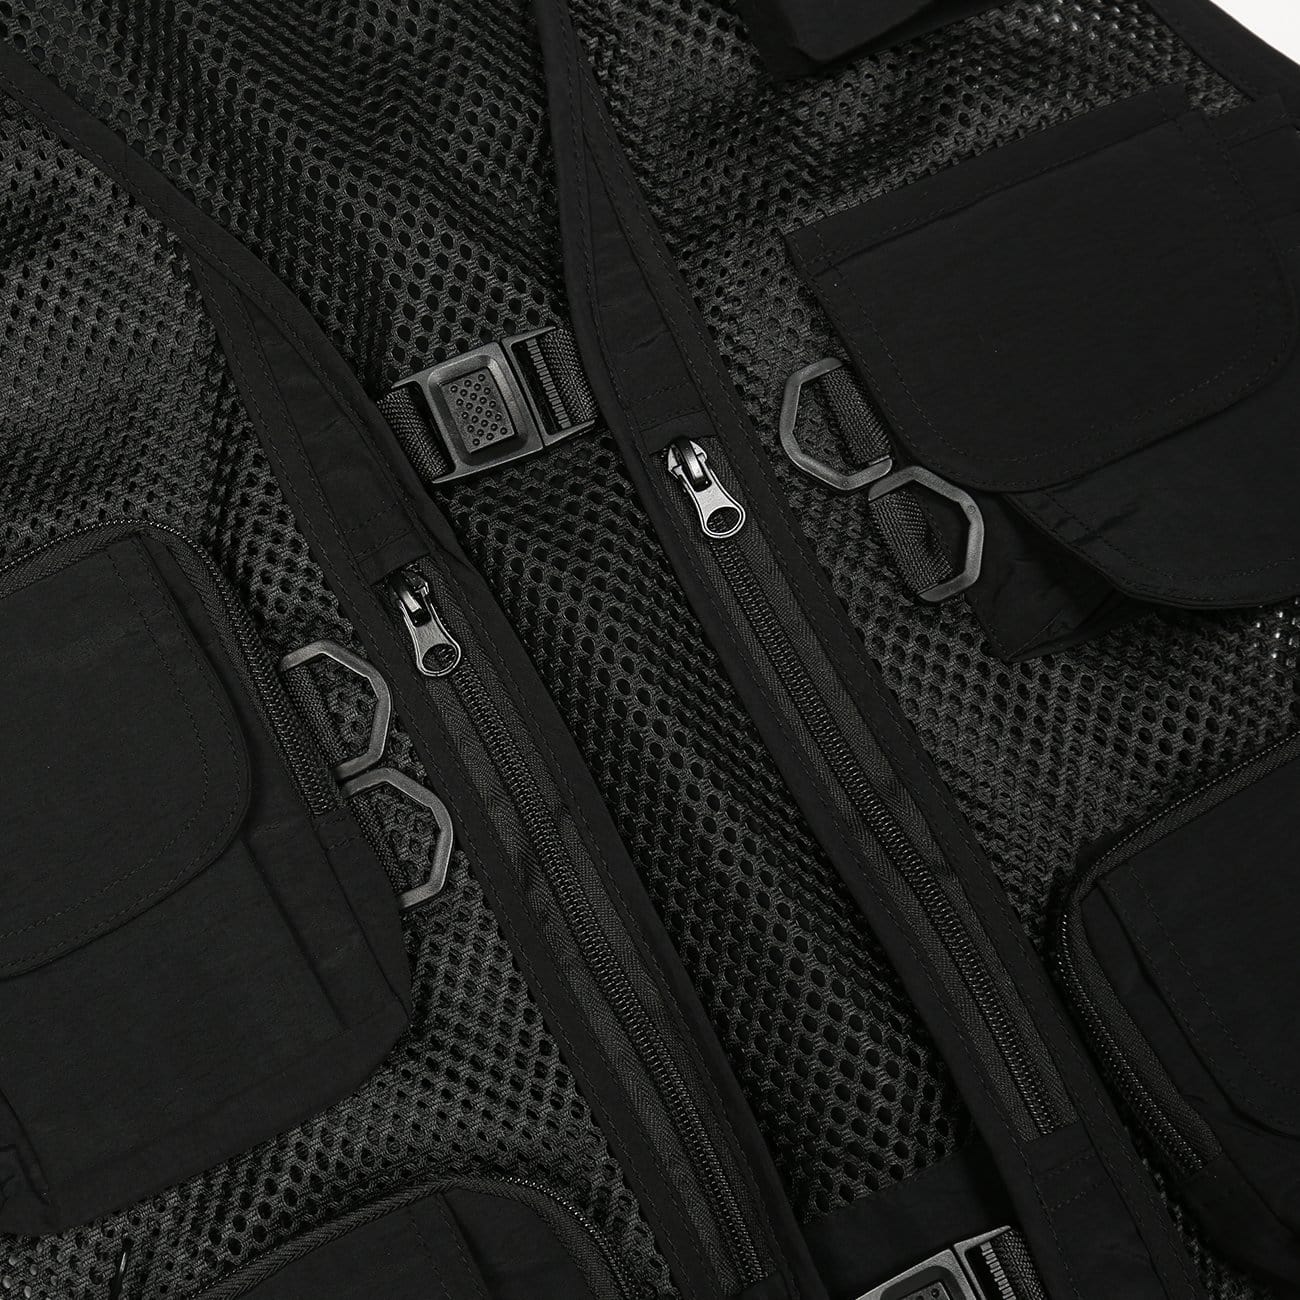 Function Grid Patchwork Multi Pockets Cardigan Jacket Vest